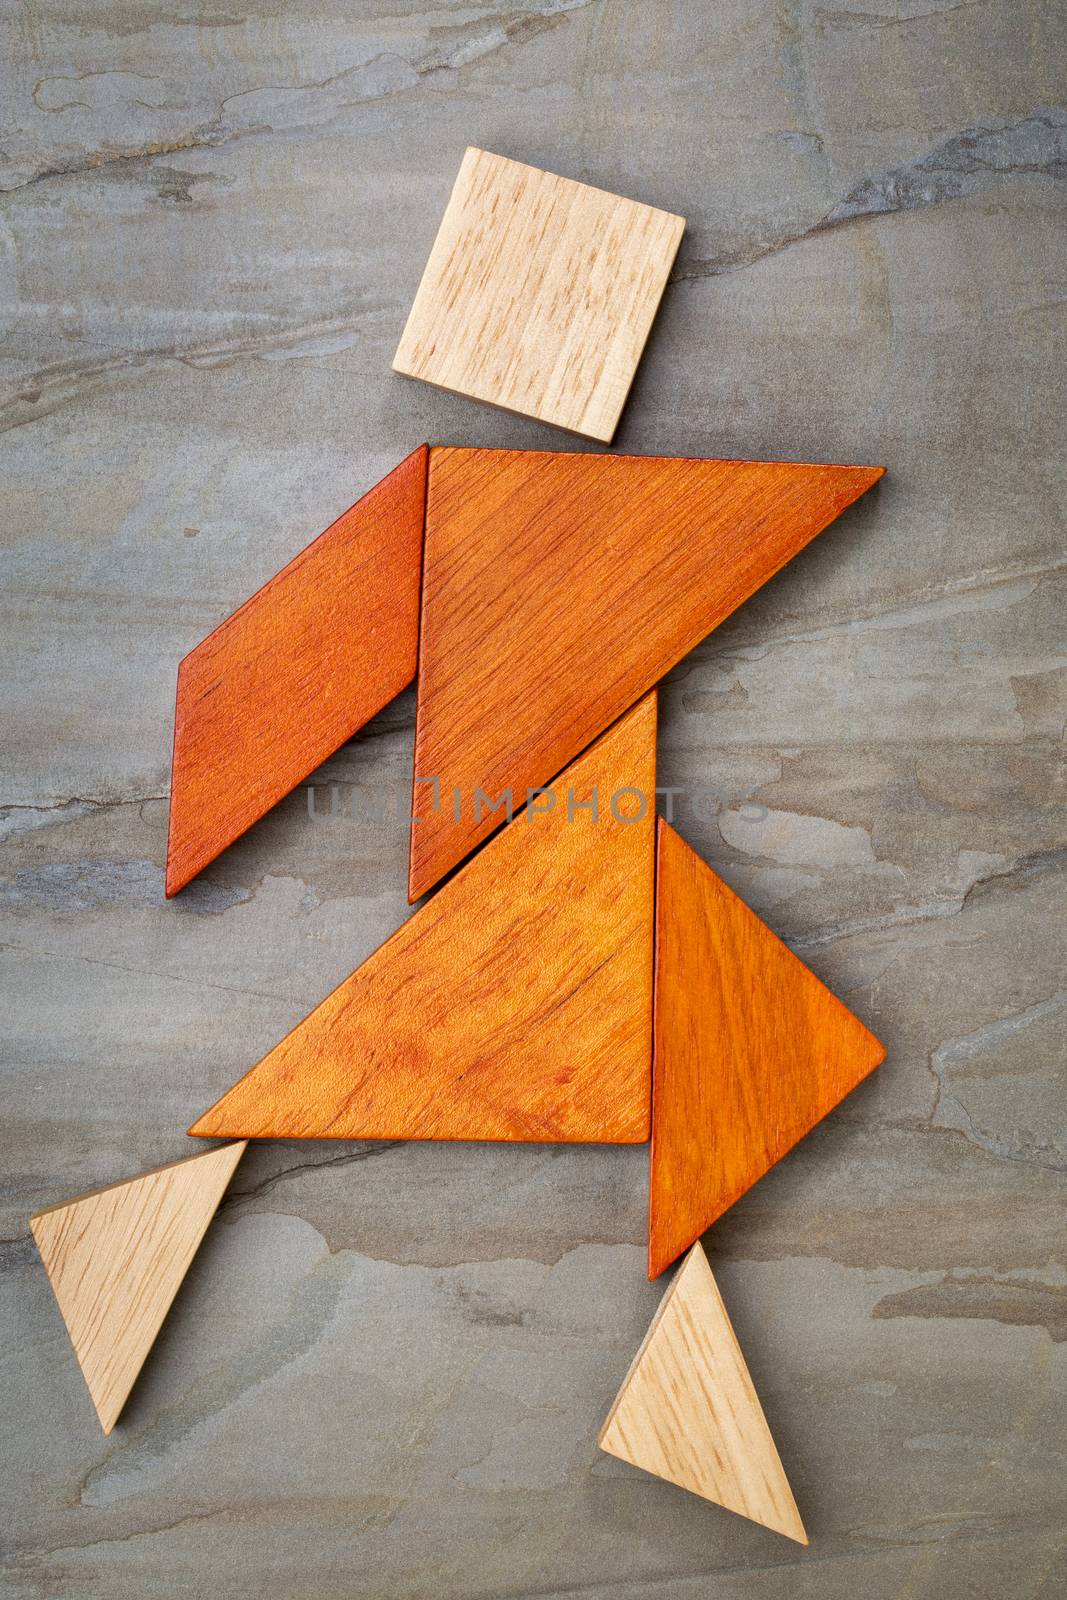 tangram dancing figure by PixelsAway